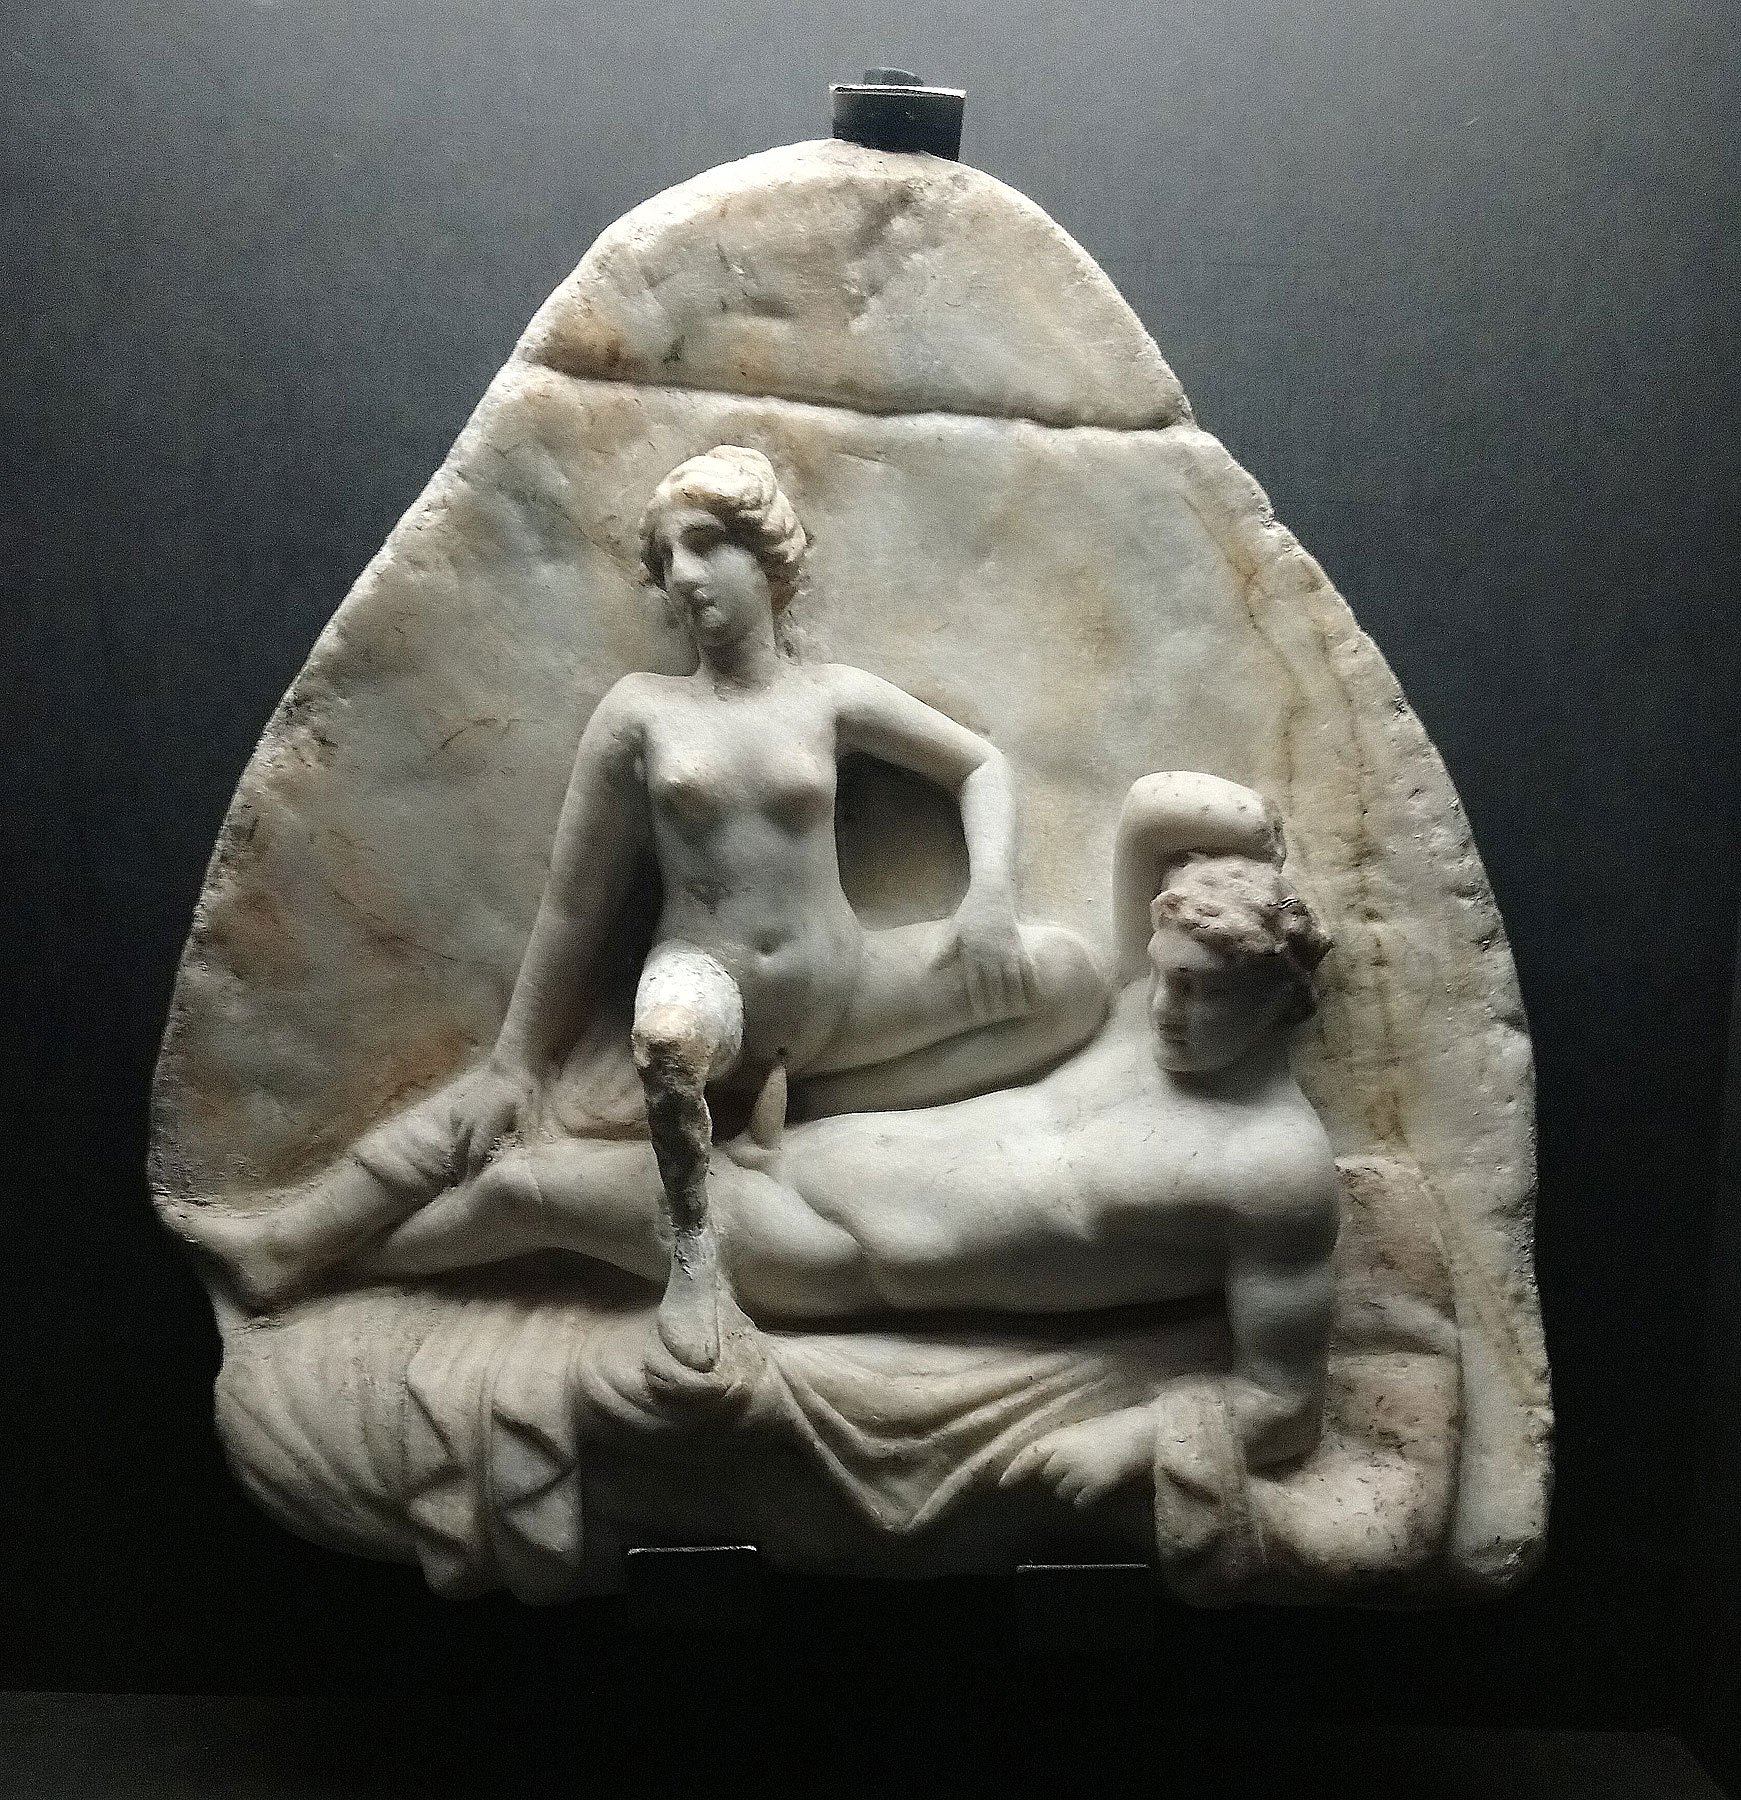 Arte romana, Rilievo con scena erotica (50 d.C. circa; marmo, 35 x 33 cm; Napoli, Museo Archeologico Nazionale, Gabinetto Segreto)
